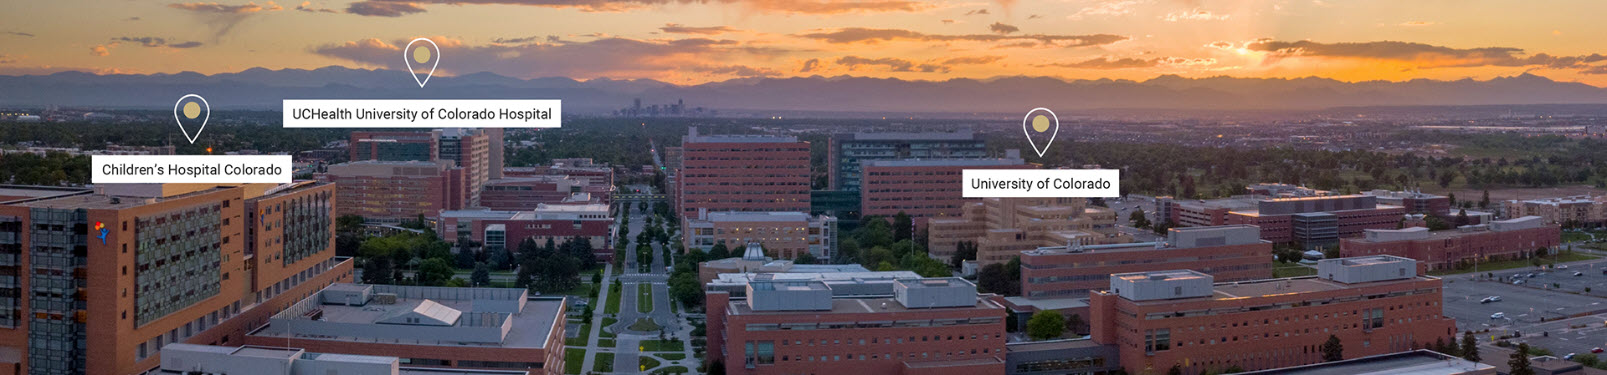 University of Colorado, Main Campus